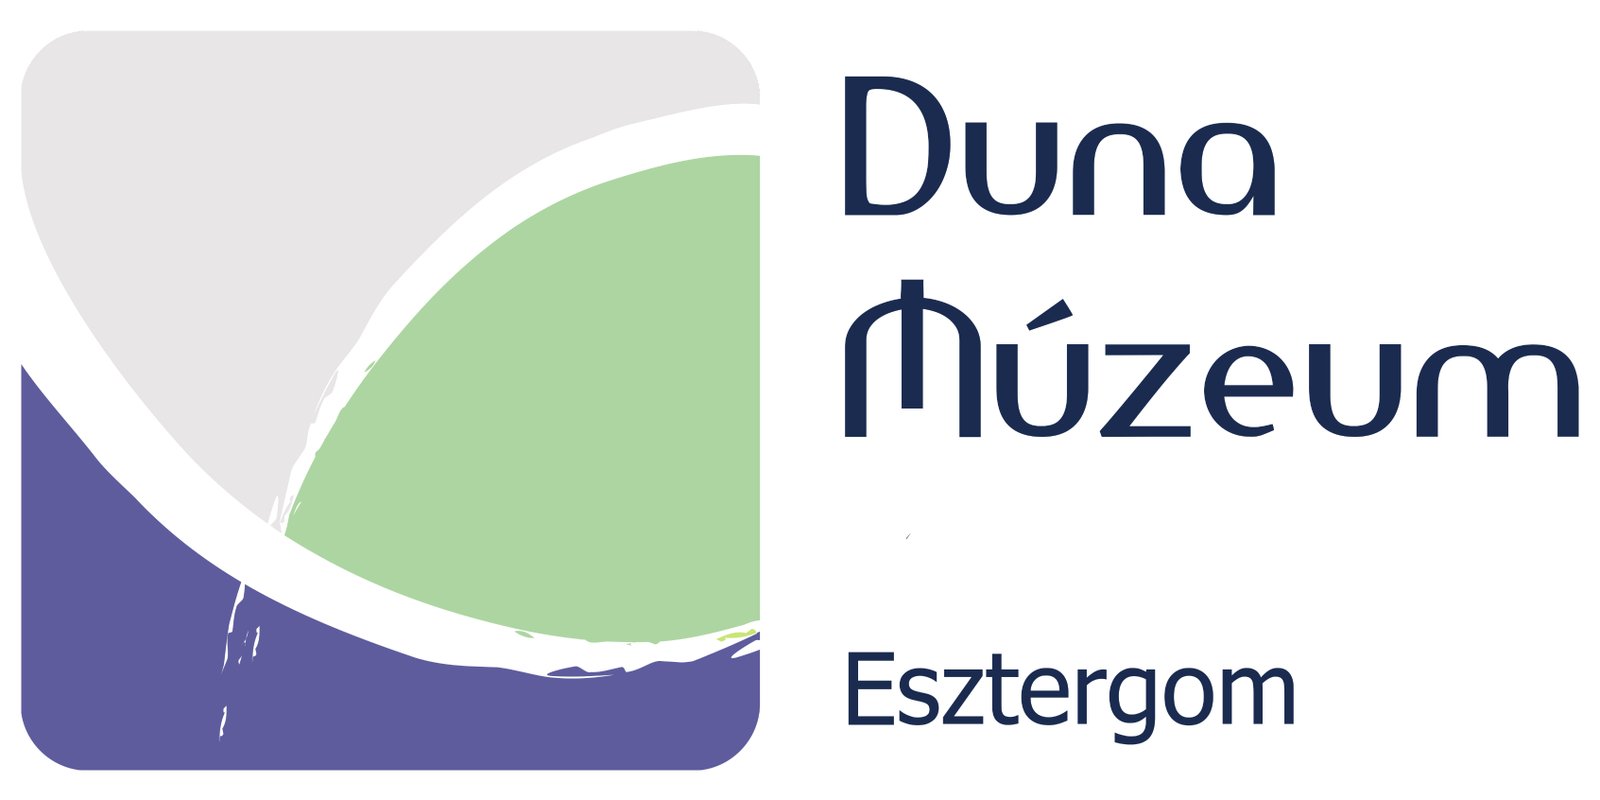 Duna Museum